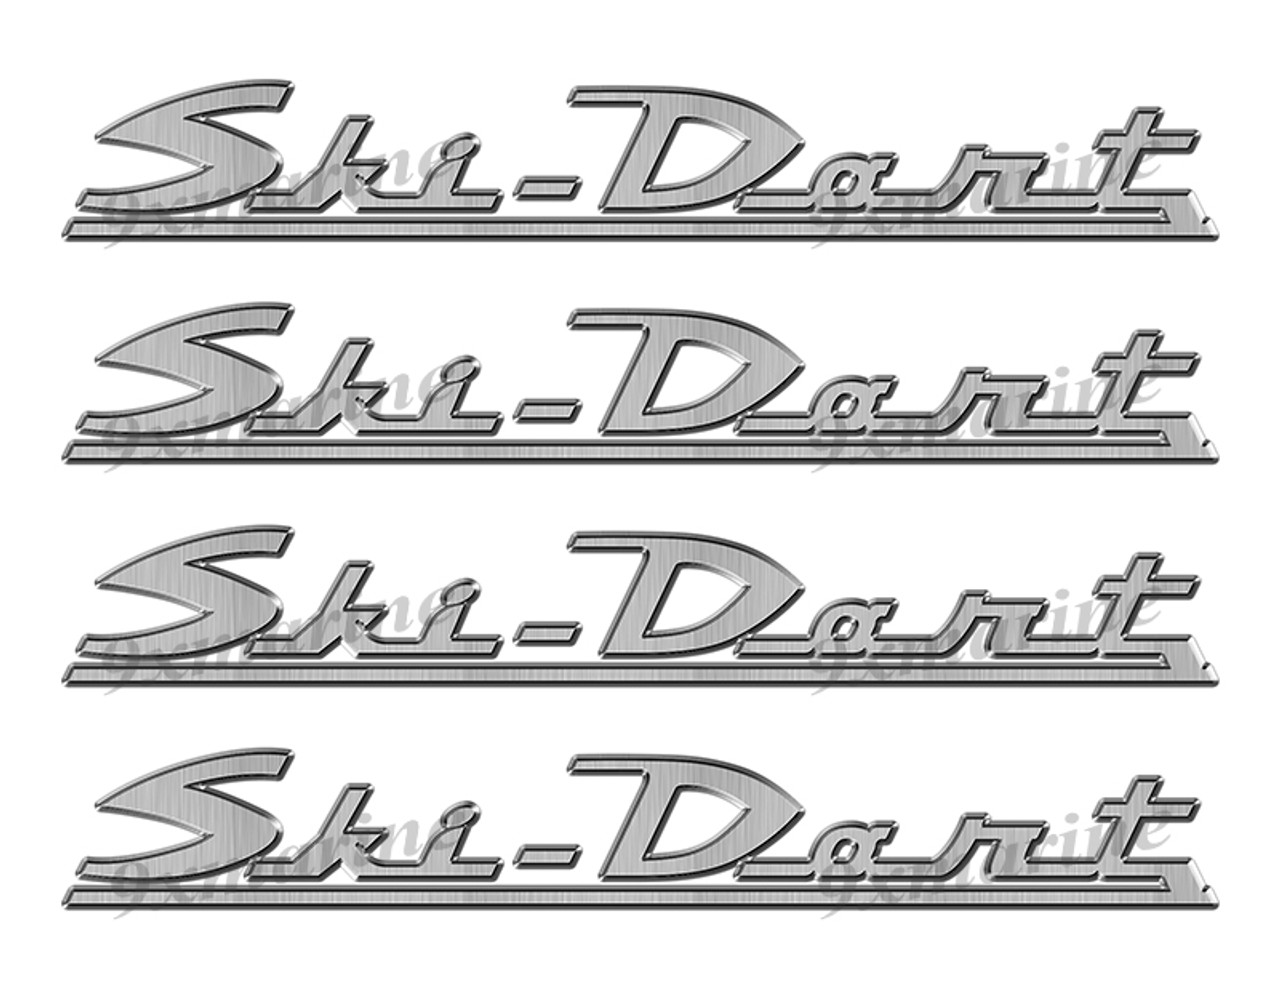 Ski Dart 60s boat Stickers "3D Vinyl Replica" of originals - 10" long